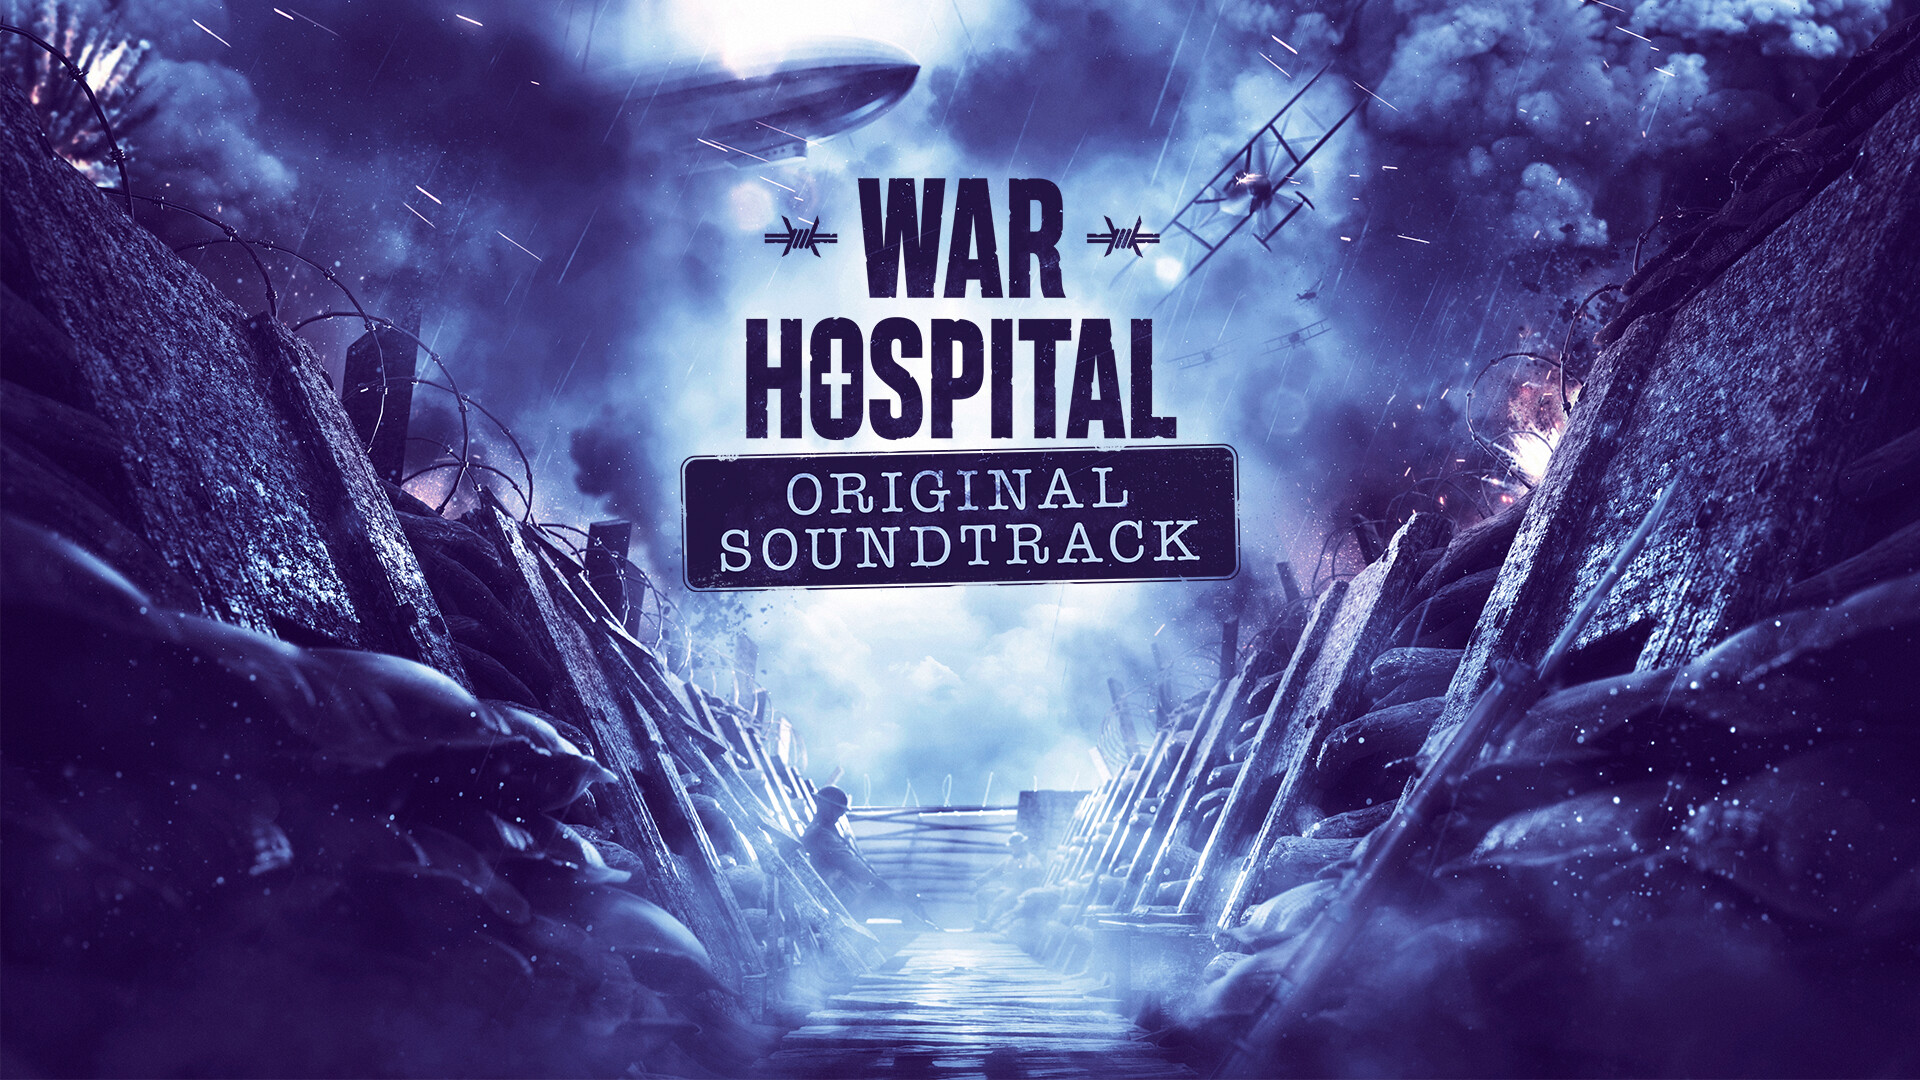 [$ 3.38] War Hospital - Original Soundtrack DLC Steam CD Key